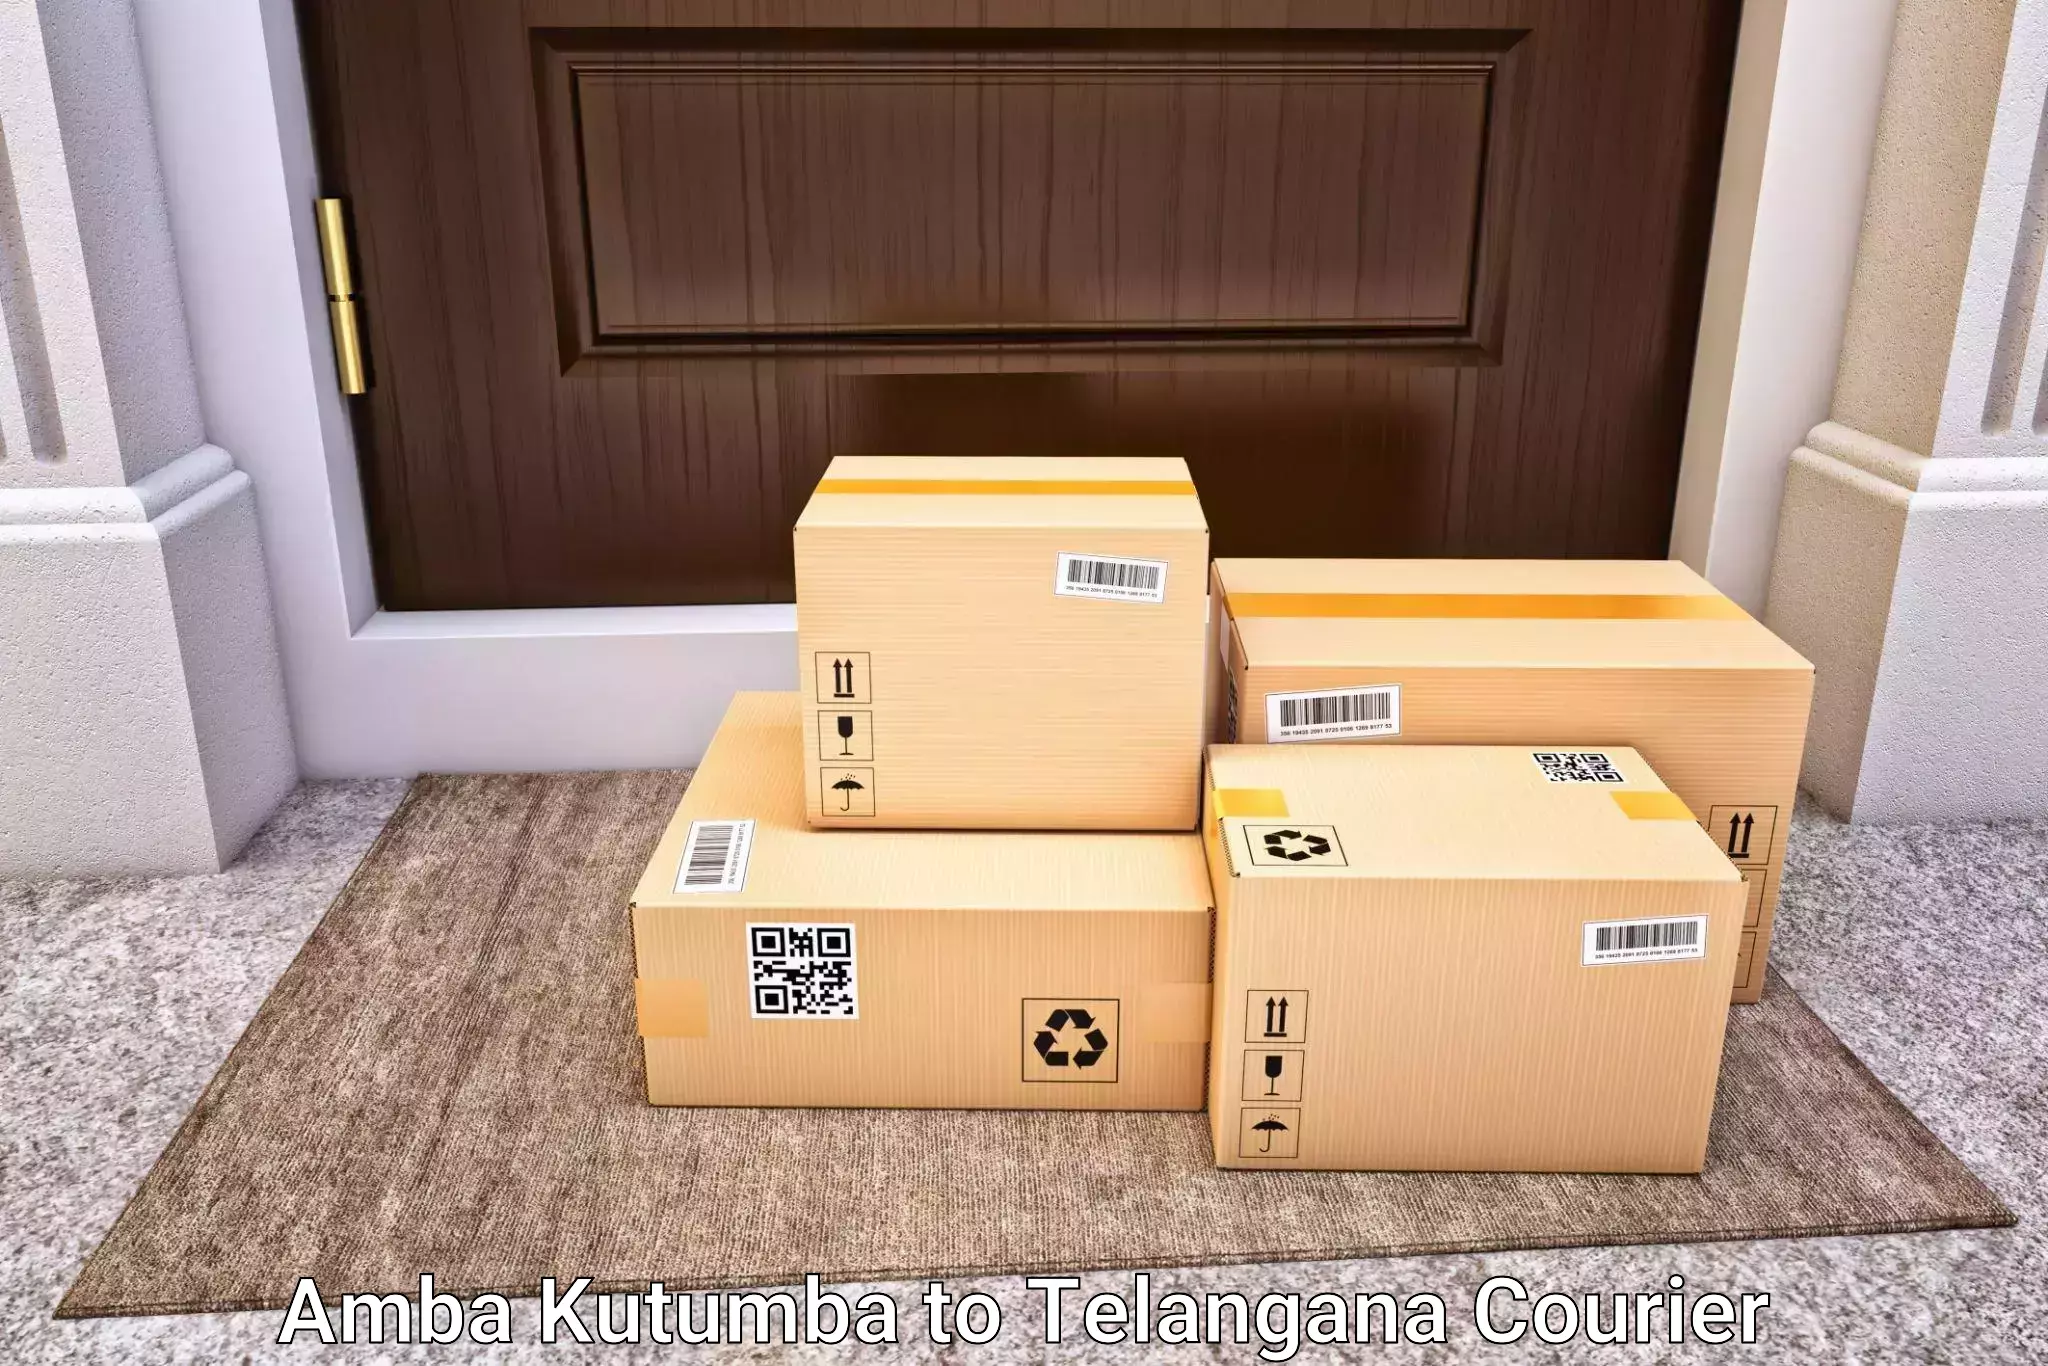 Luggage delivery system Amba Kutumba to Telangana